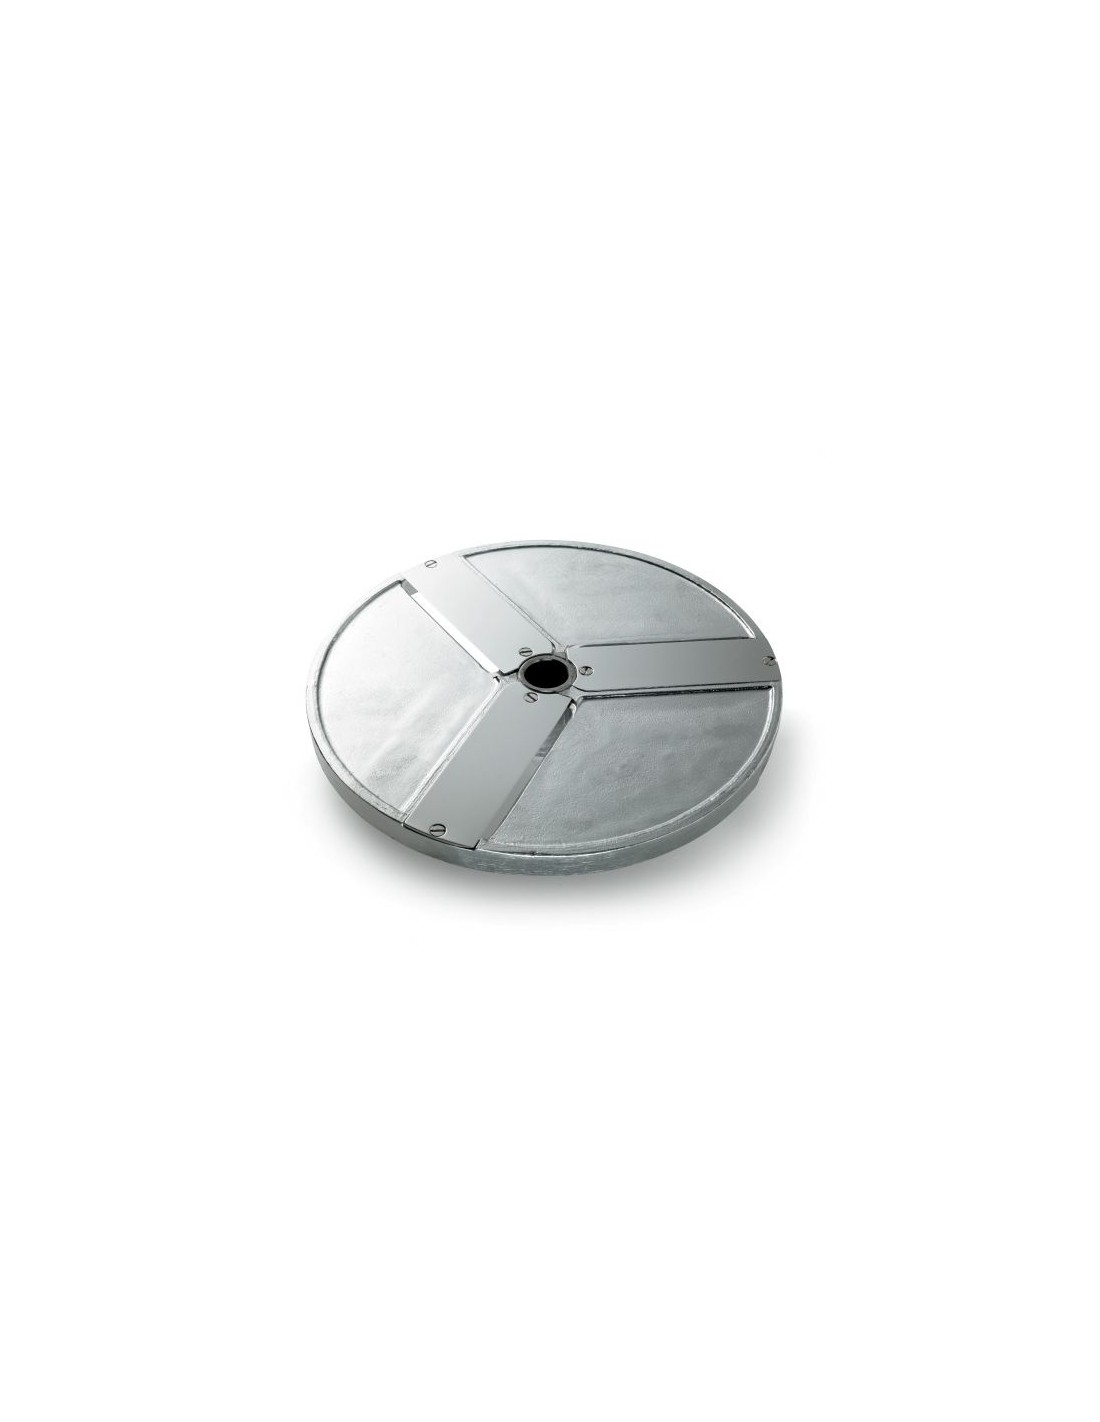 Disco para rodajas - Diámetro 205 mm - Espesor de corte 100 mm